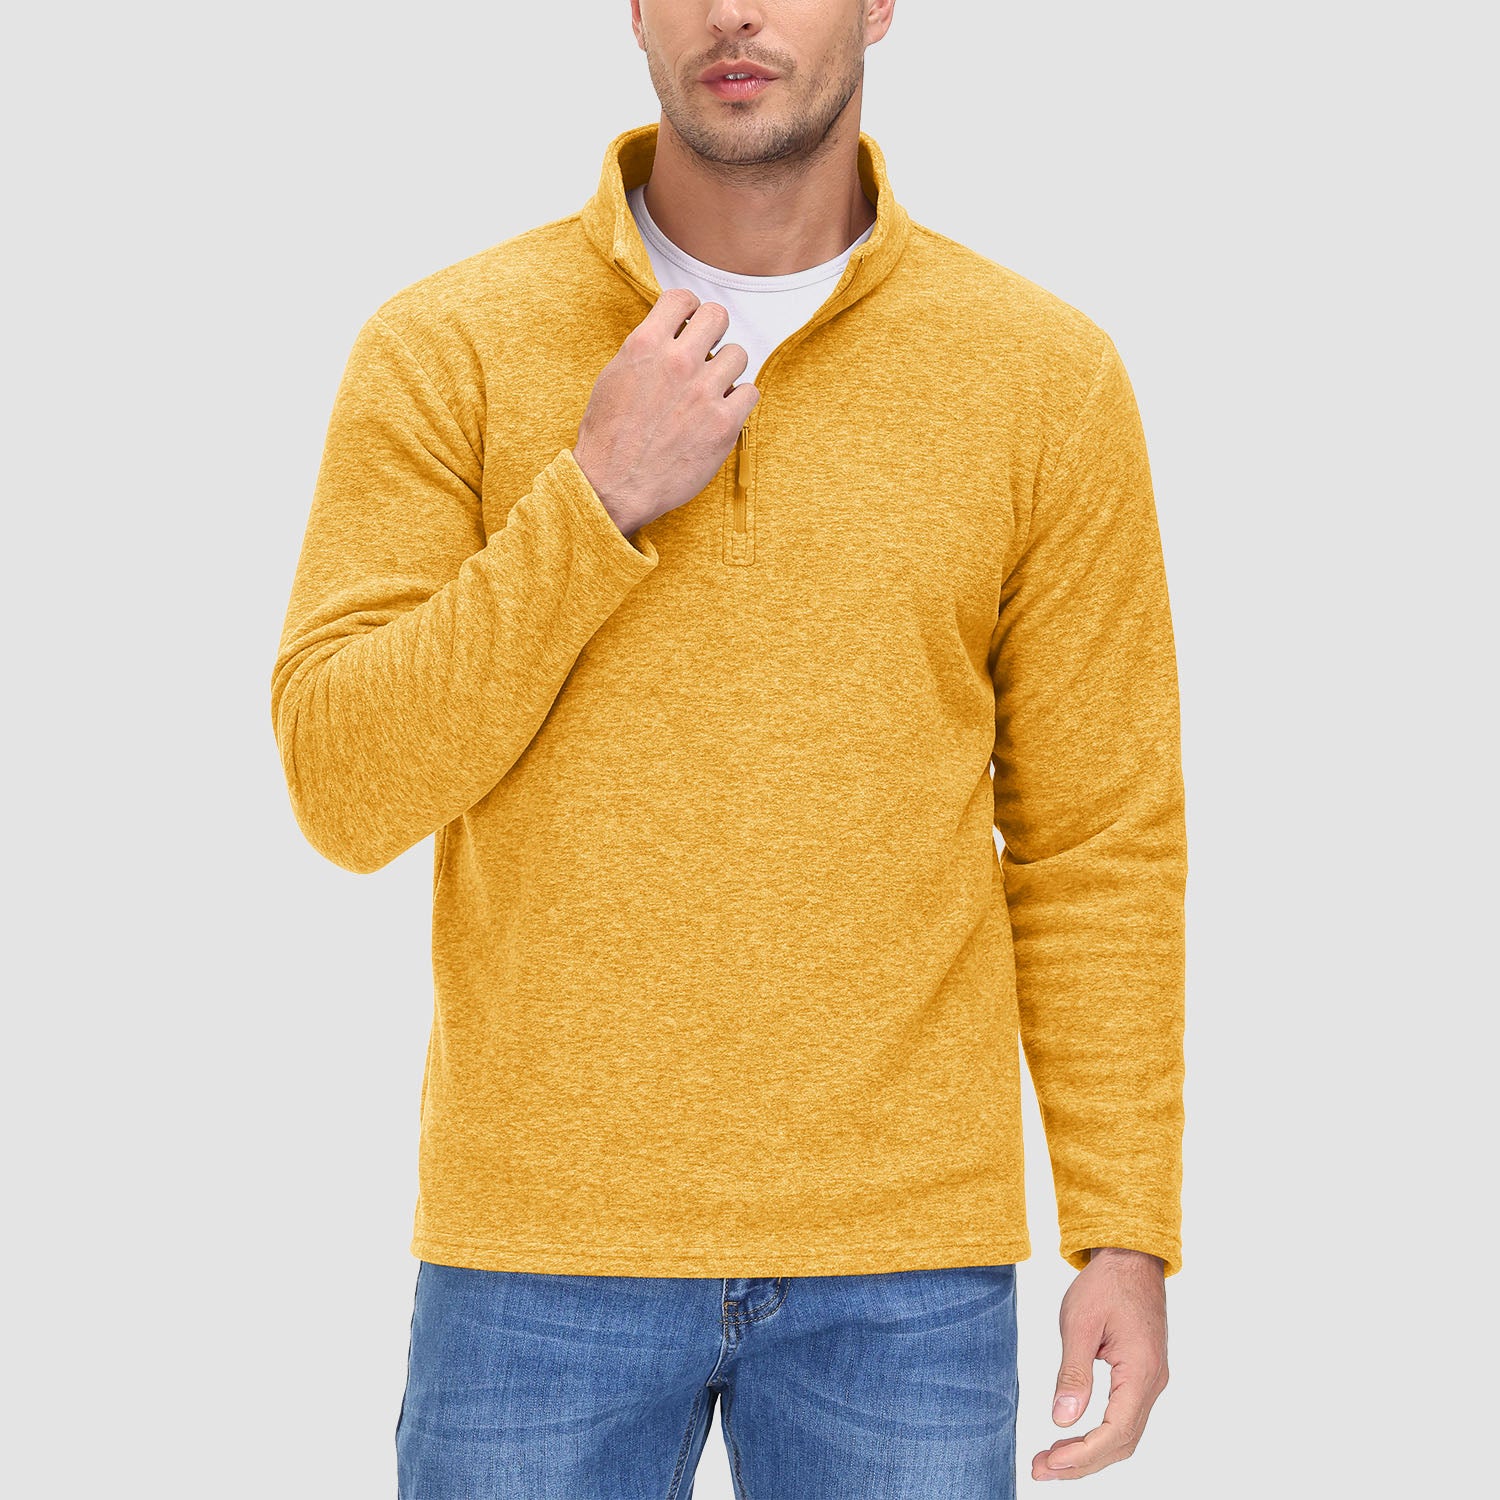 Men's 1/4 Zip Pullover Shirt Long Sleeve Sweatshirts